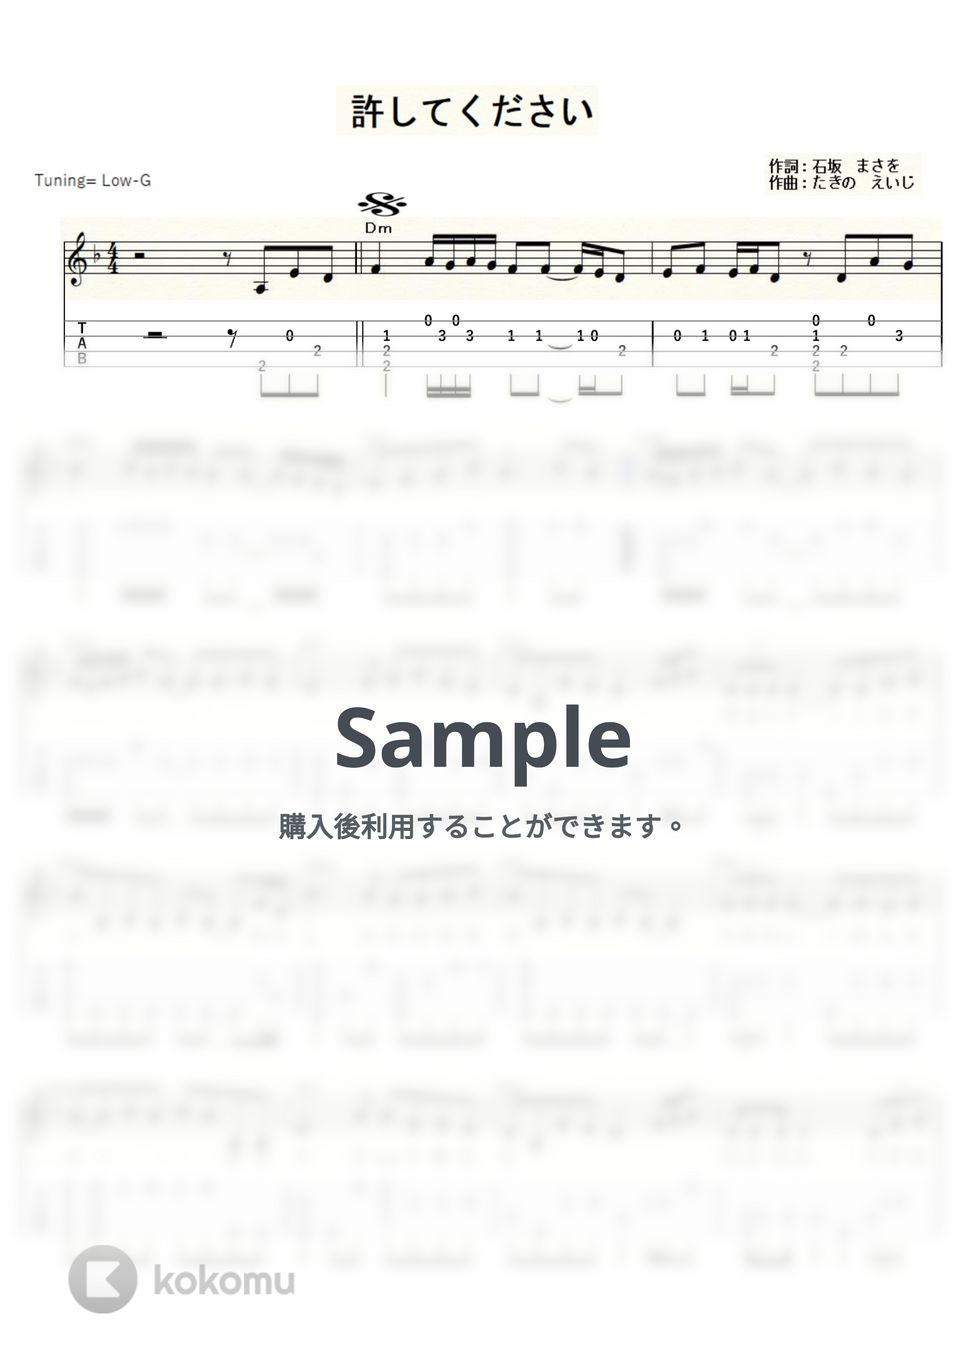 角川 博 - 許してください (ｳｸﾚﾚｿﾛ/Low-G/中級) by ukulelepapa